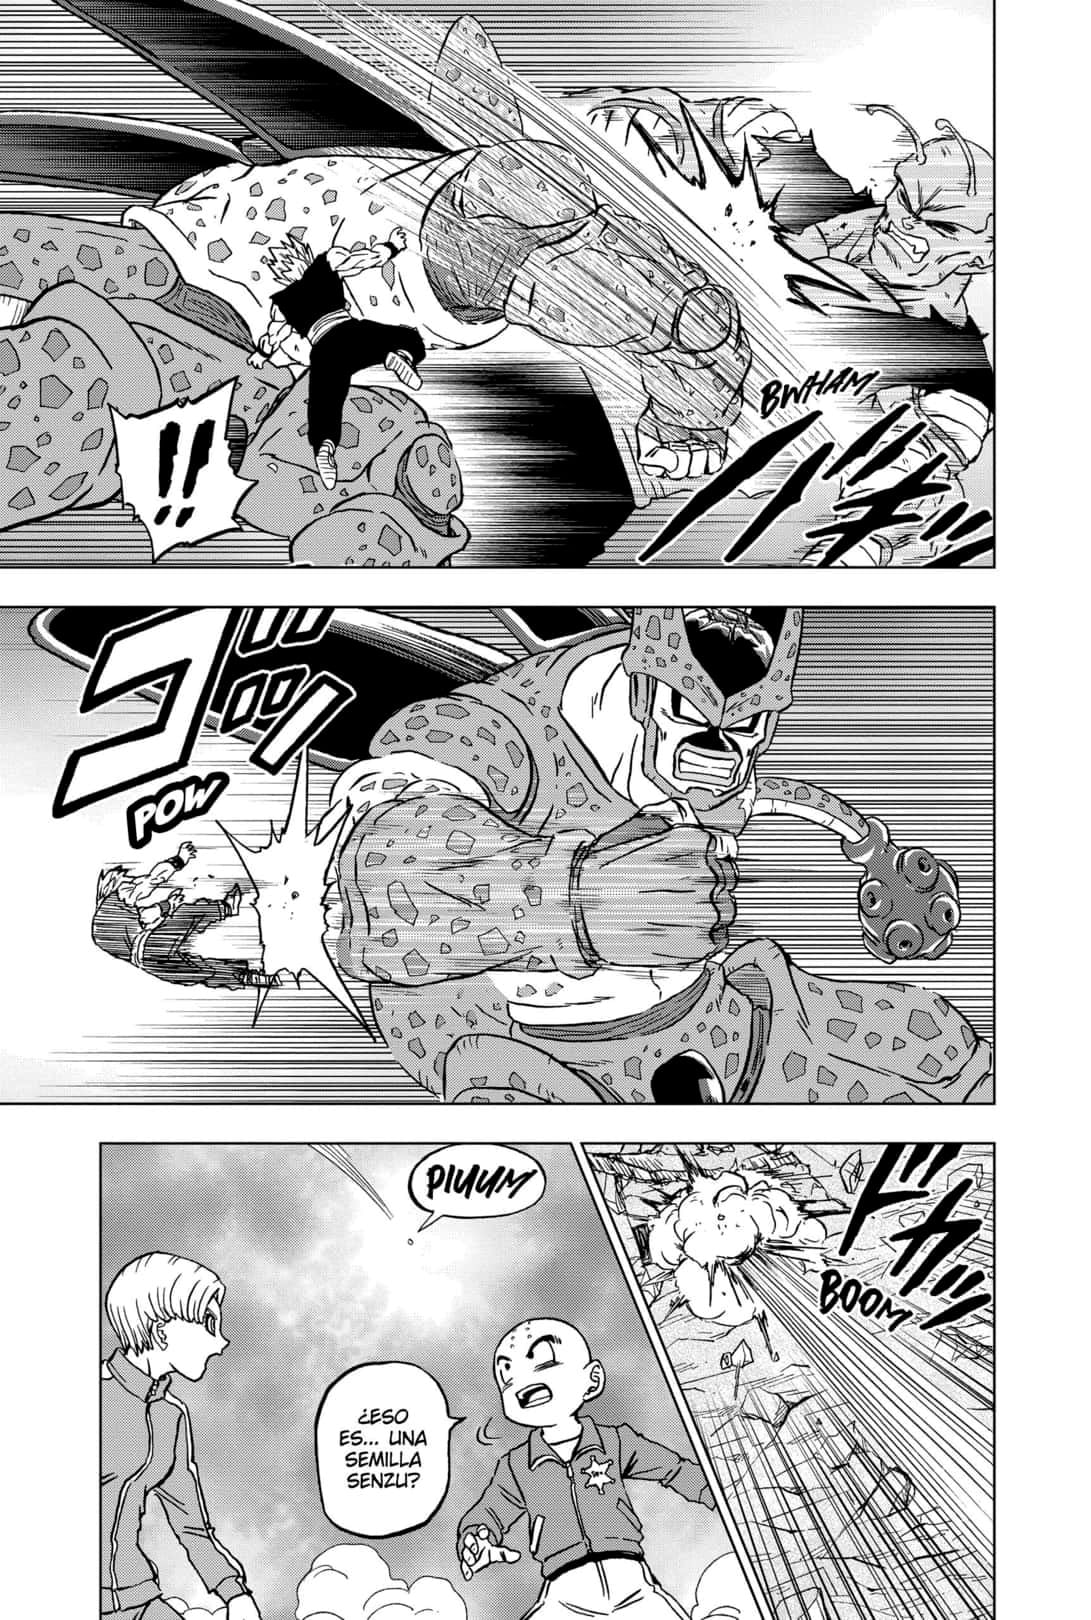 ¡El NUEVO CAPÍTULO de Dragon Ball Super en Directo! Manga 98